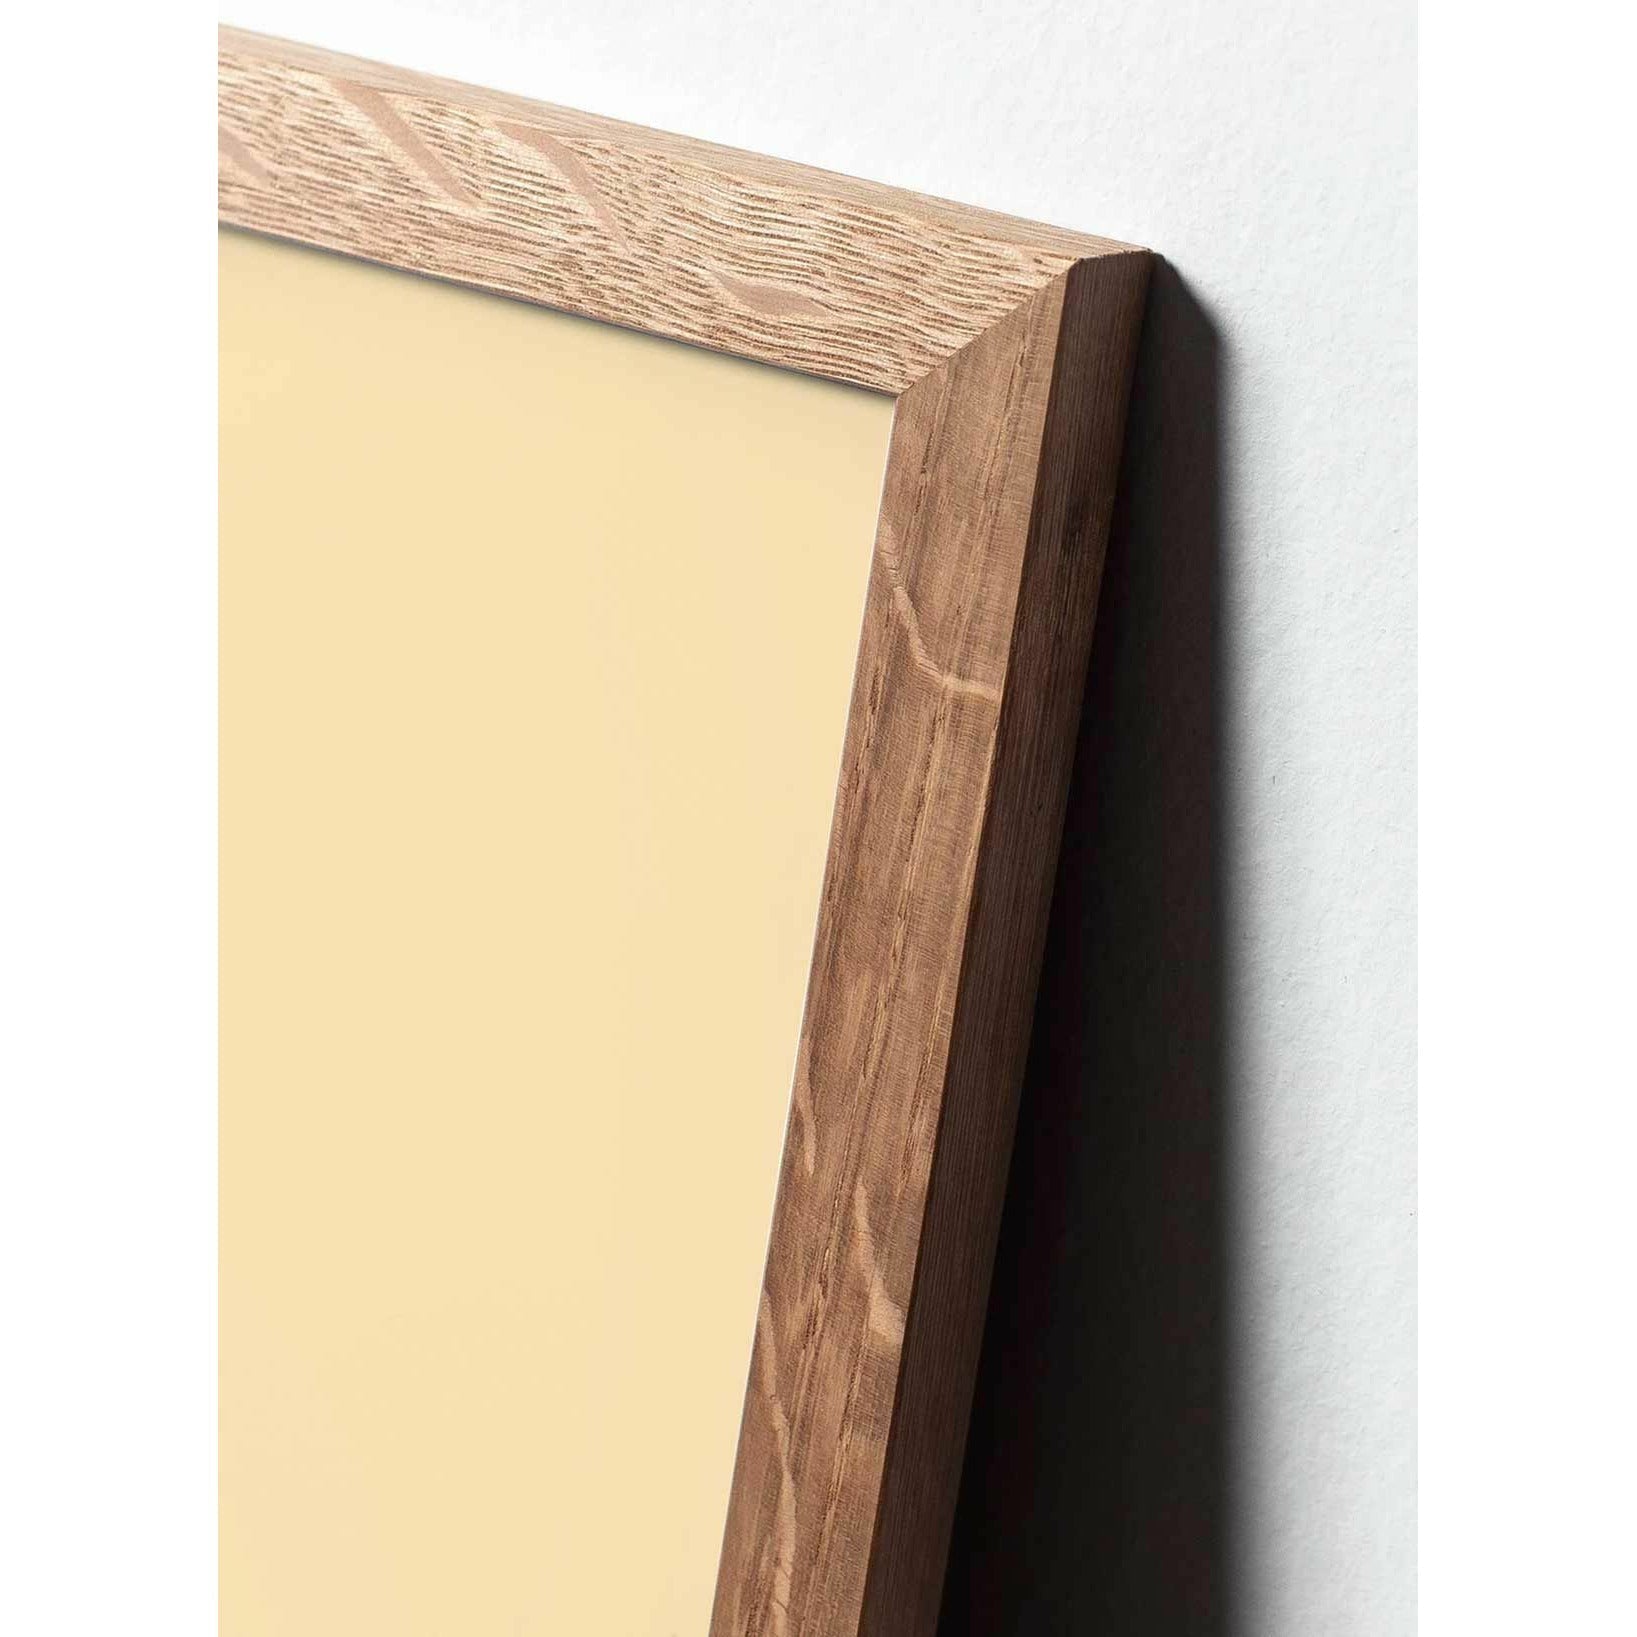 Póster de línea de huevo de creación, marco hecho de madera clara A5, fondo blanco